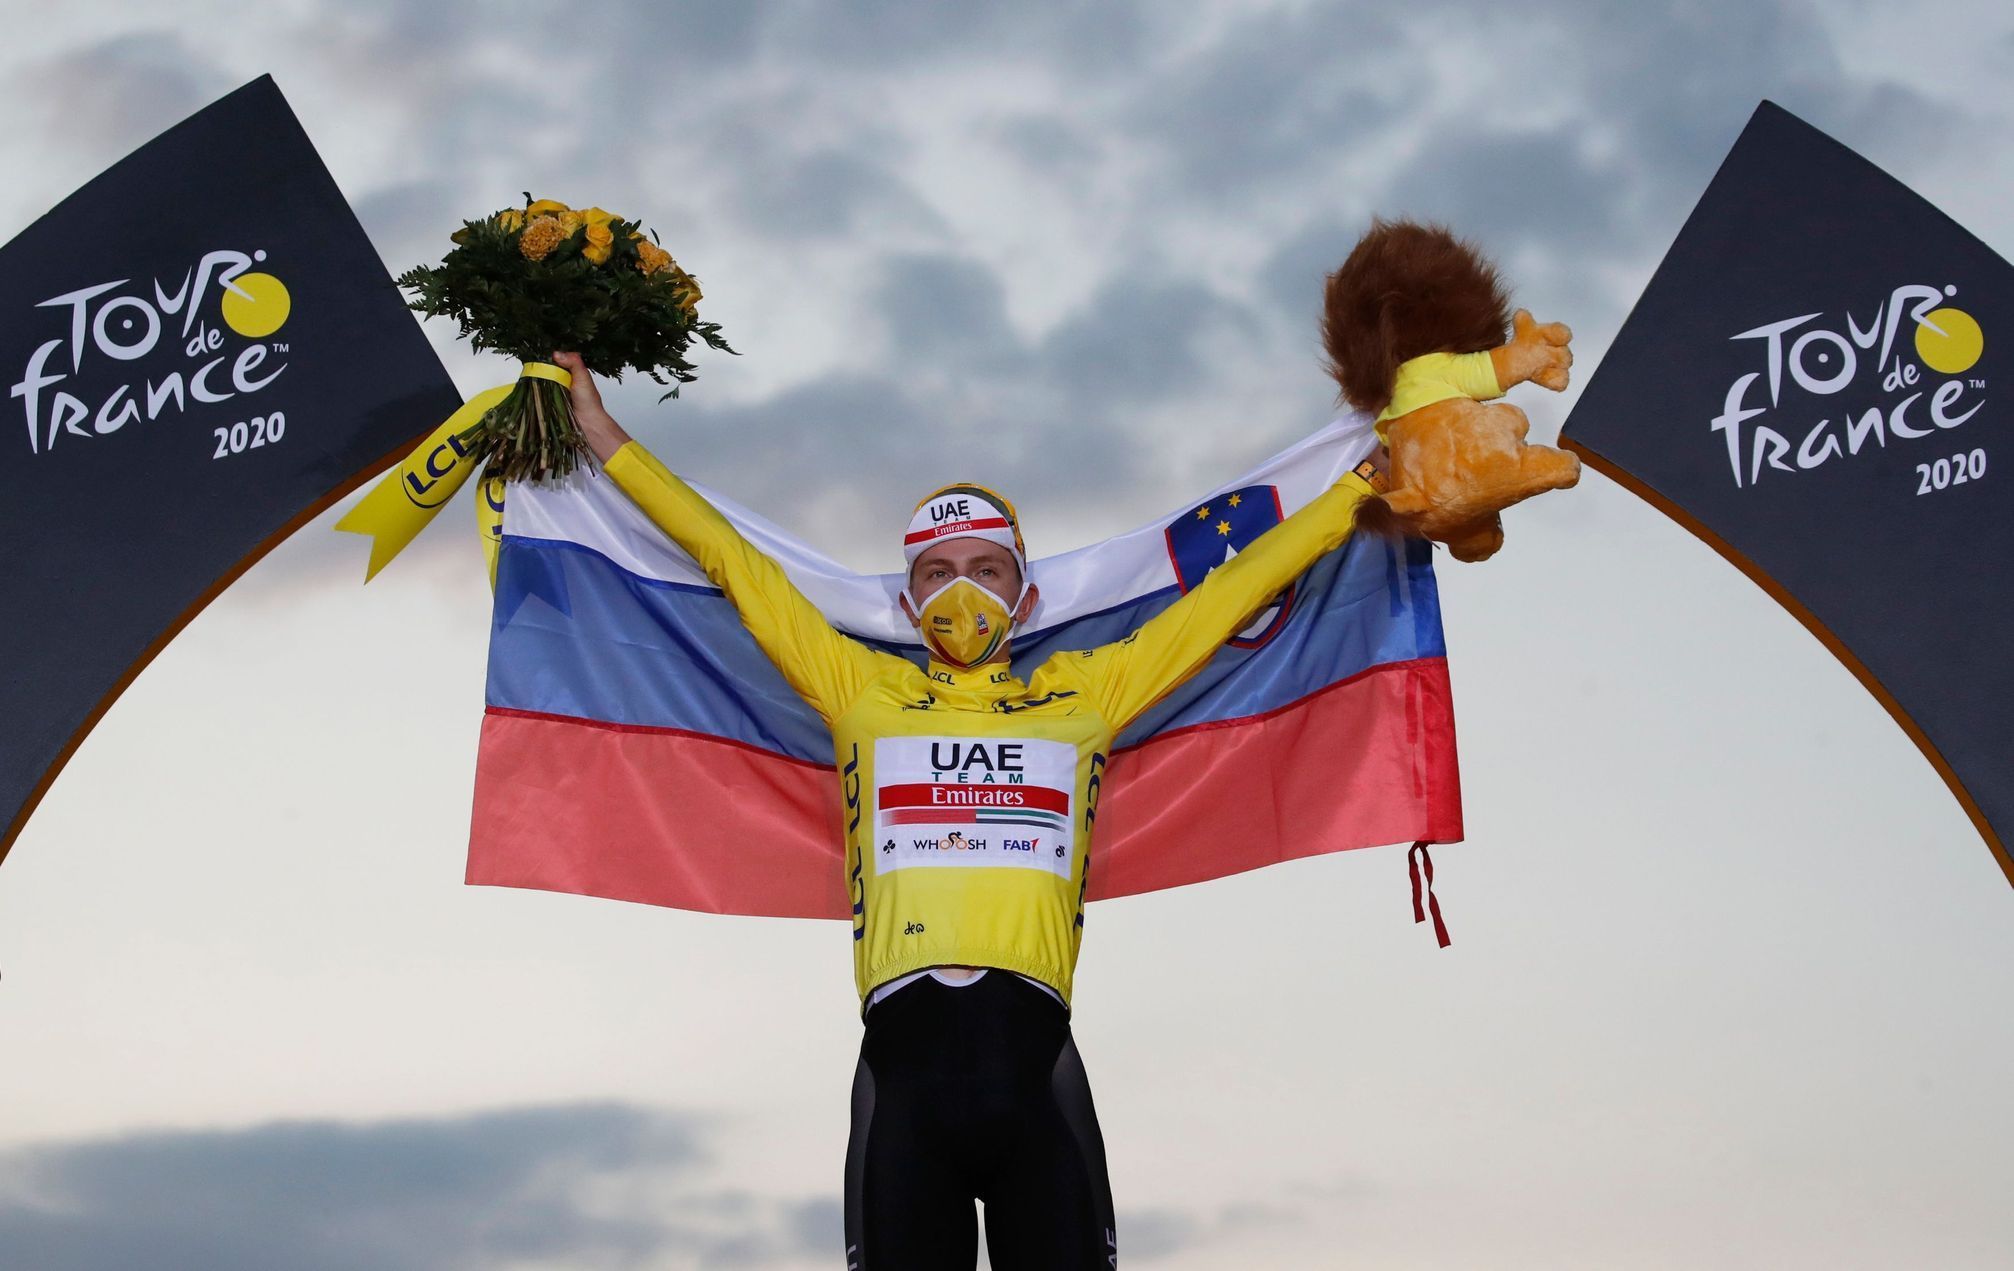 Ceremoniál po Tour de France 2020: Vítěz Tadej Pogačar